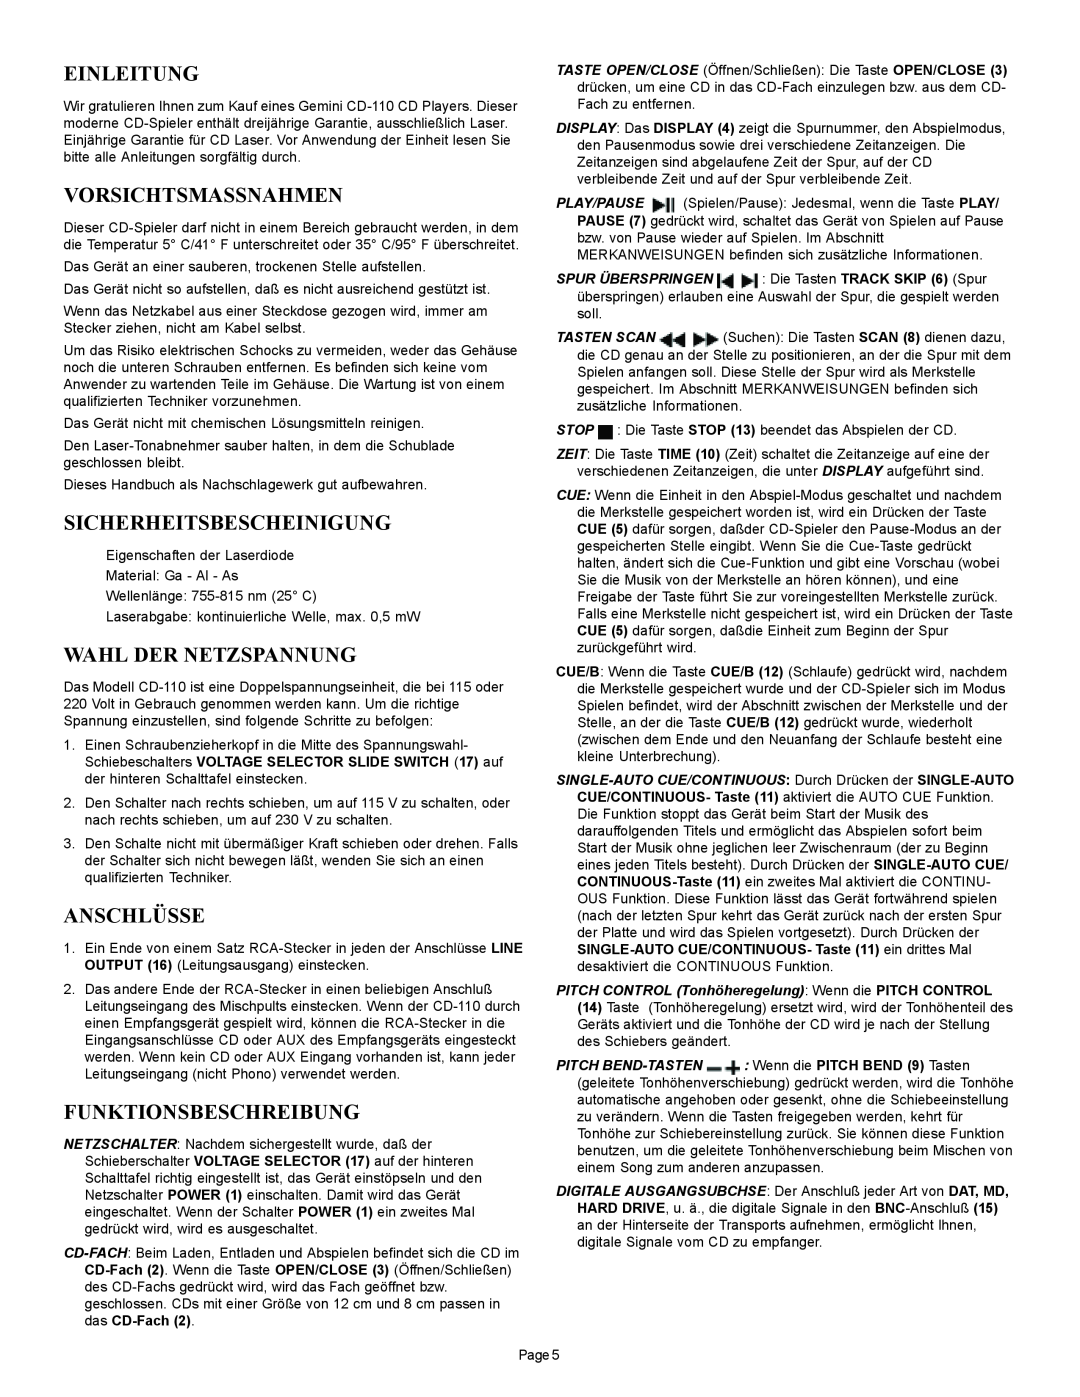 Gemini CD-110 manual Einleitung, Vorsichtsmassnahmen, Sicherheitsbescheinigung, Wahl Der Netzspannung, Anschlüsse 